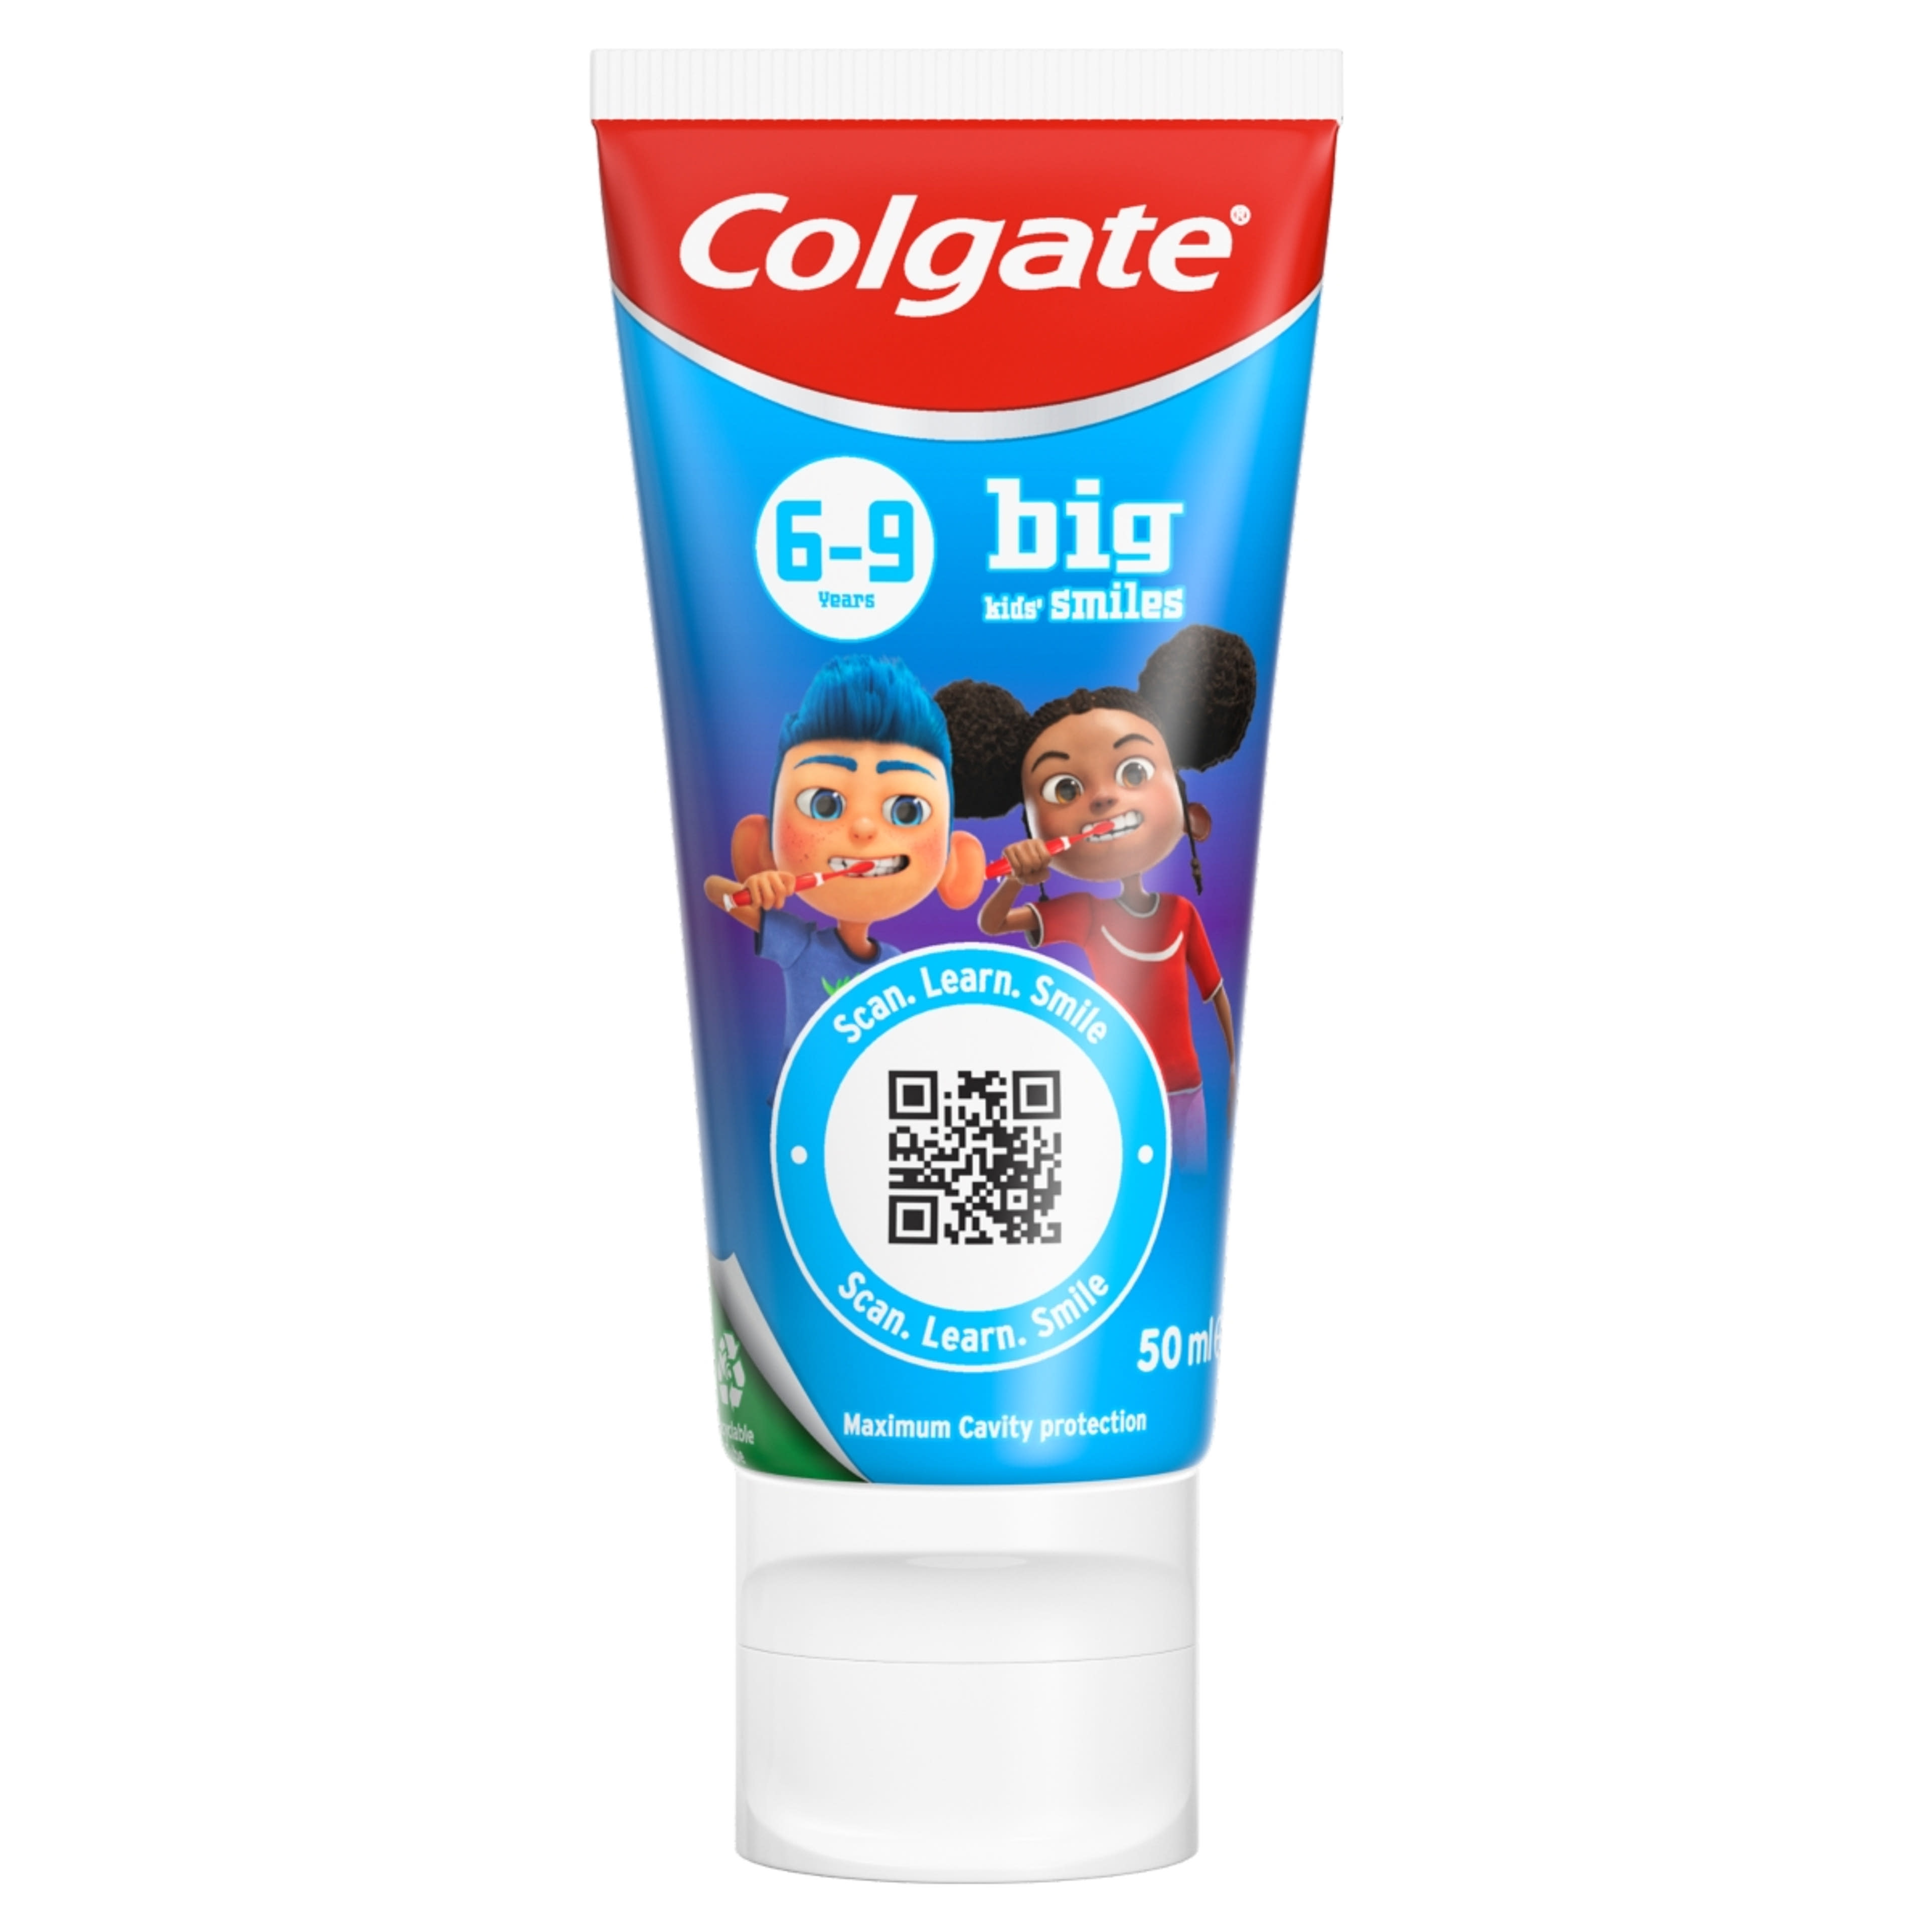 Colgate Kids Smiles fogkrém 6-9 éves gyerekek részére - 50 ml-2